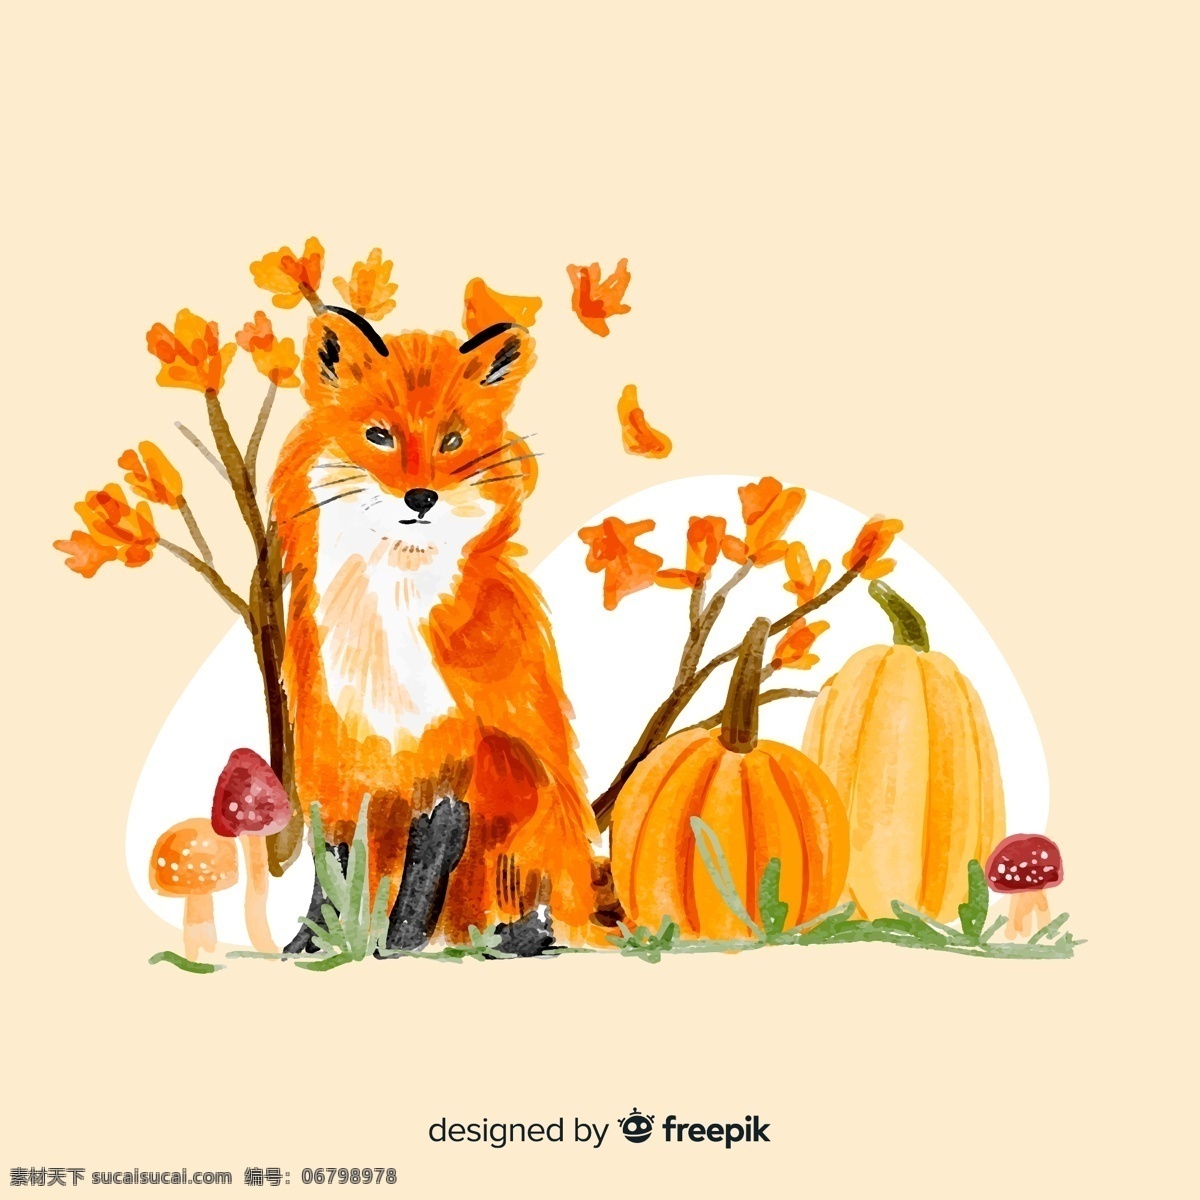 水彩绘秋季 狐狸和南瓜 矢量素材 落叶 水彩 秋季 狐狸 南瓜 树木 树叶 蘑菇 矢量图 ai格式